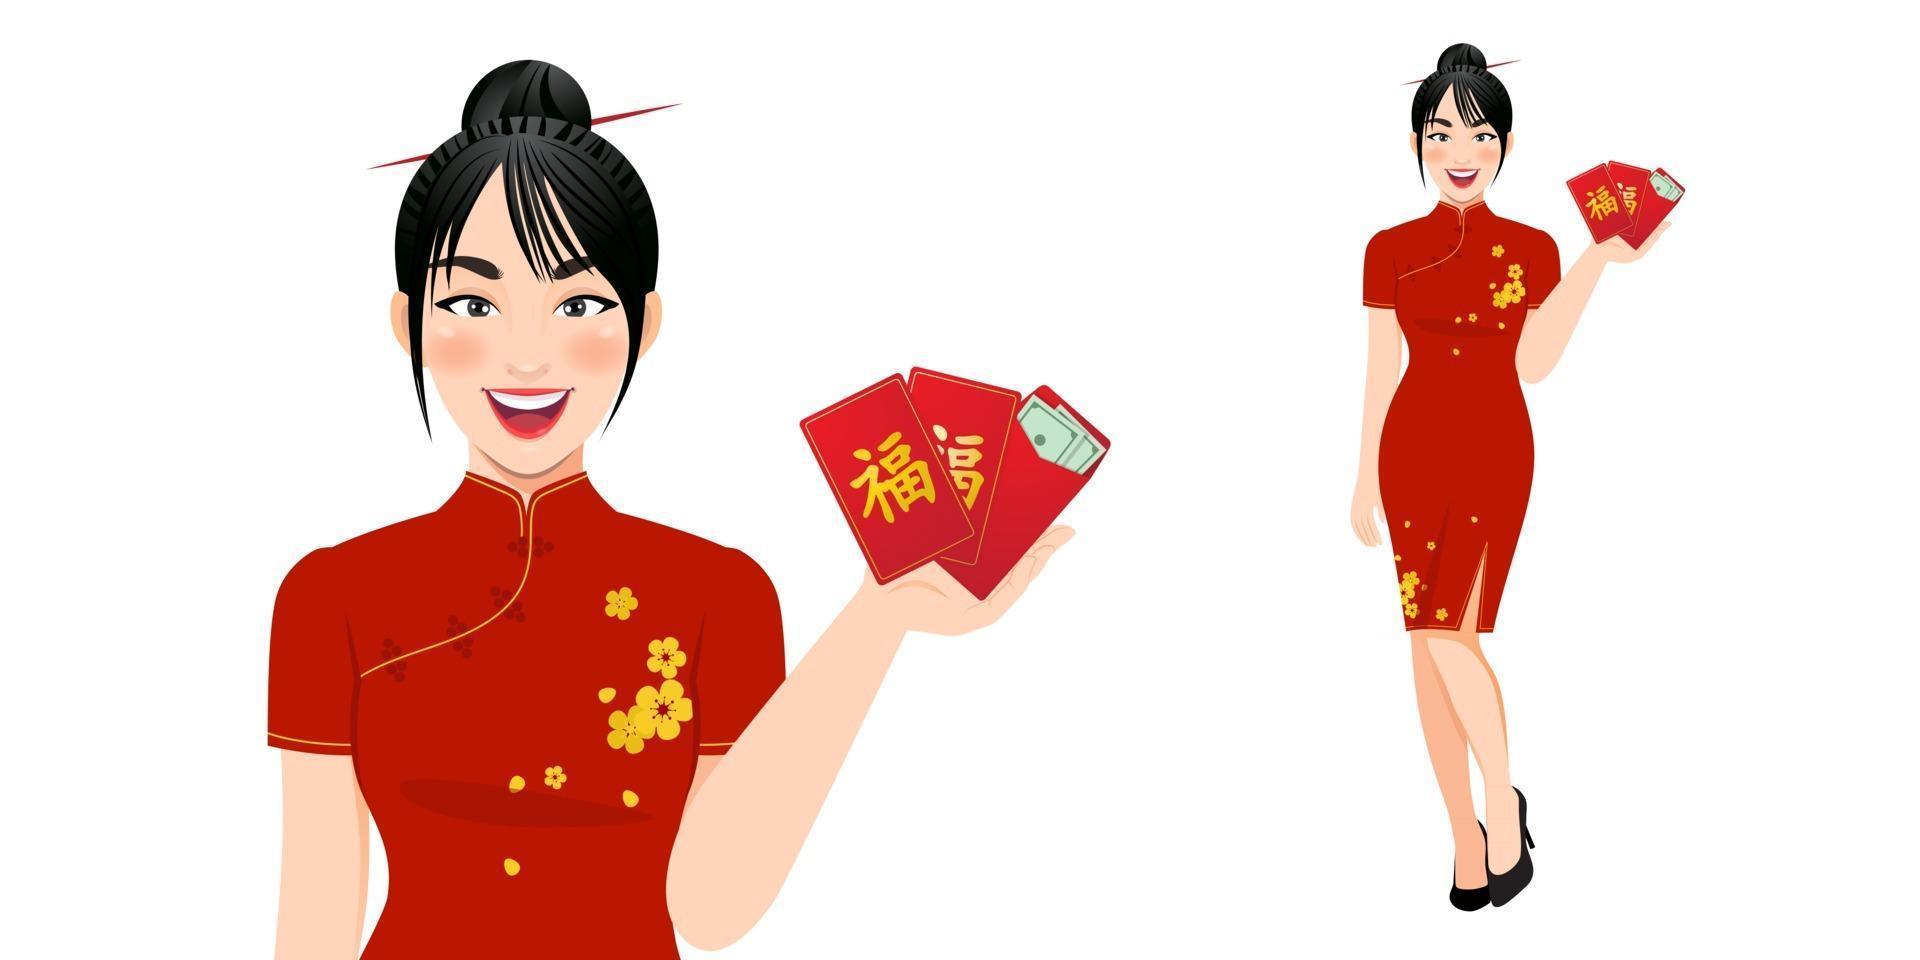 mulher chinesa em roupas tradicionais, segurando os envelopes vermelhos. vetor de conceito de feliz ano novo chinês